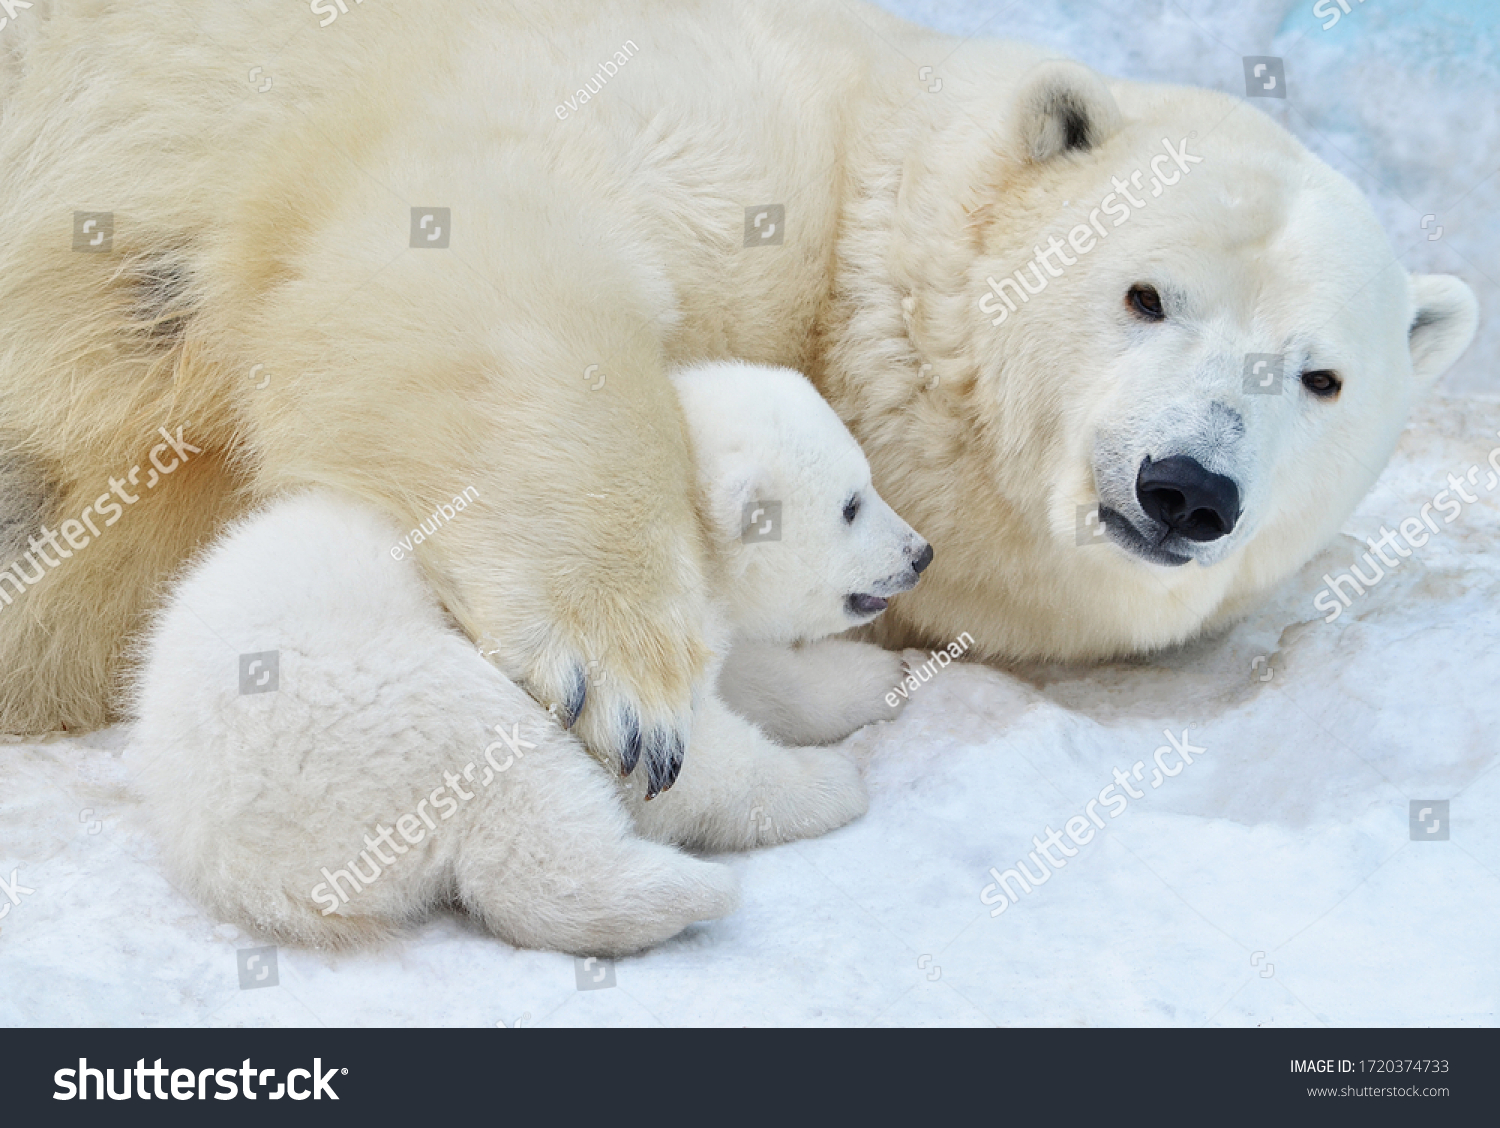 Polar bear with a bear cub. #1720374733